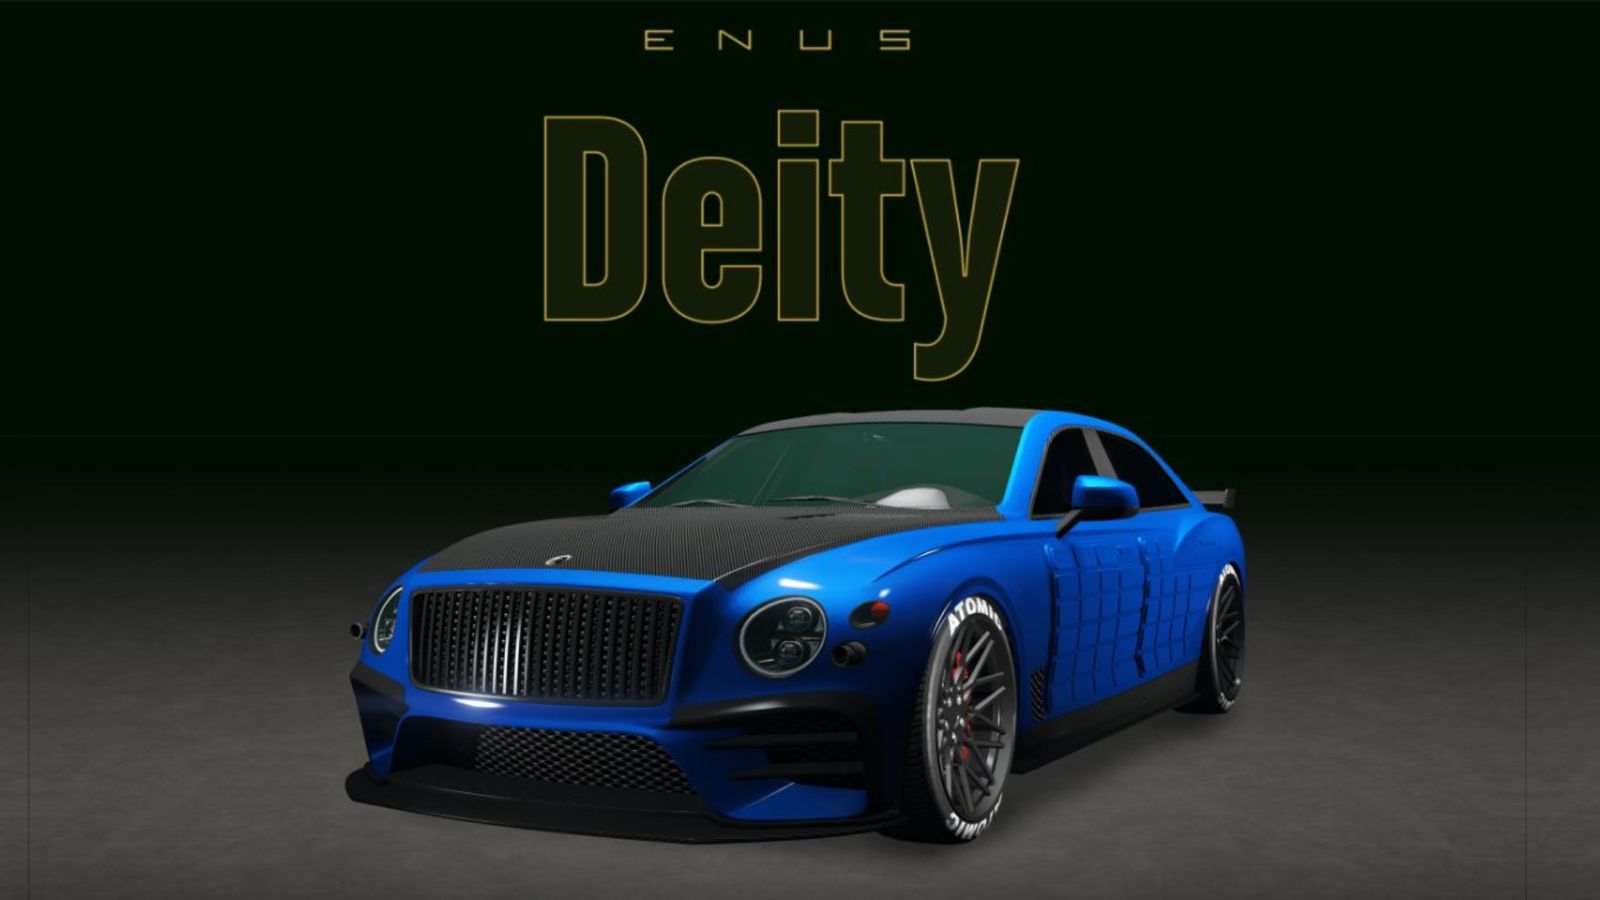 GTA Online Enus Deity in Blue